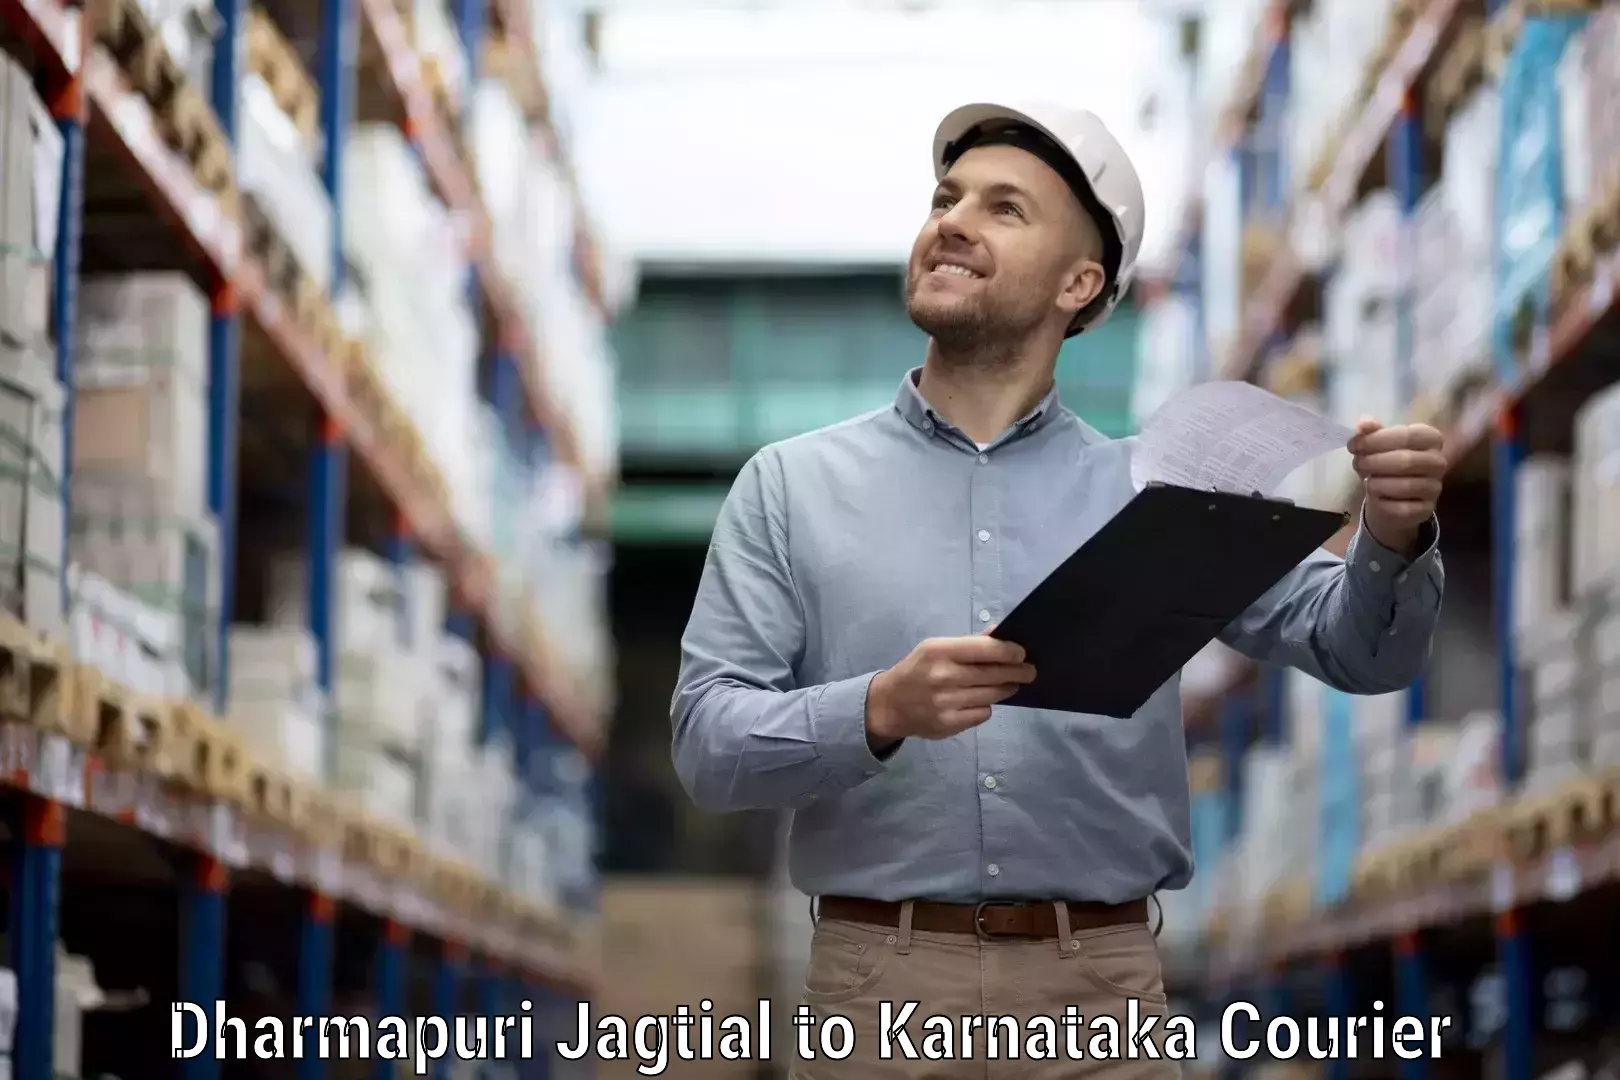 Premium delivery services Dharmapuri Jagtial to Kurugodu